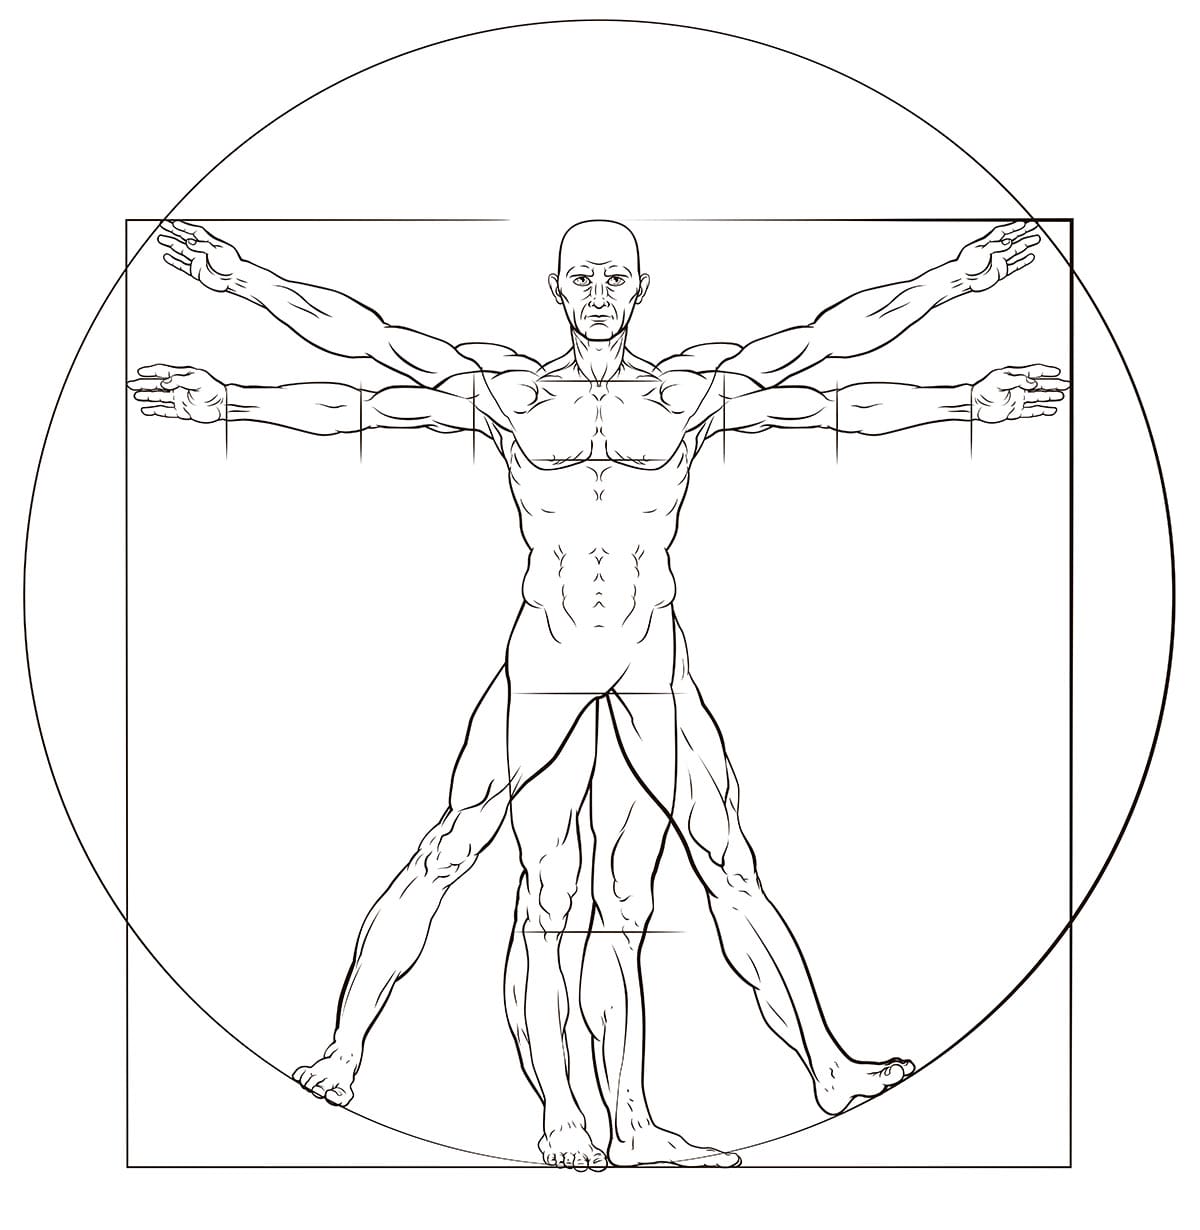 A human figure like Leonard Da Vinci s Vitruvian man anatomy illustration